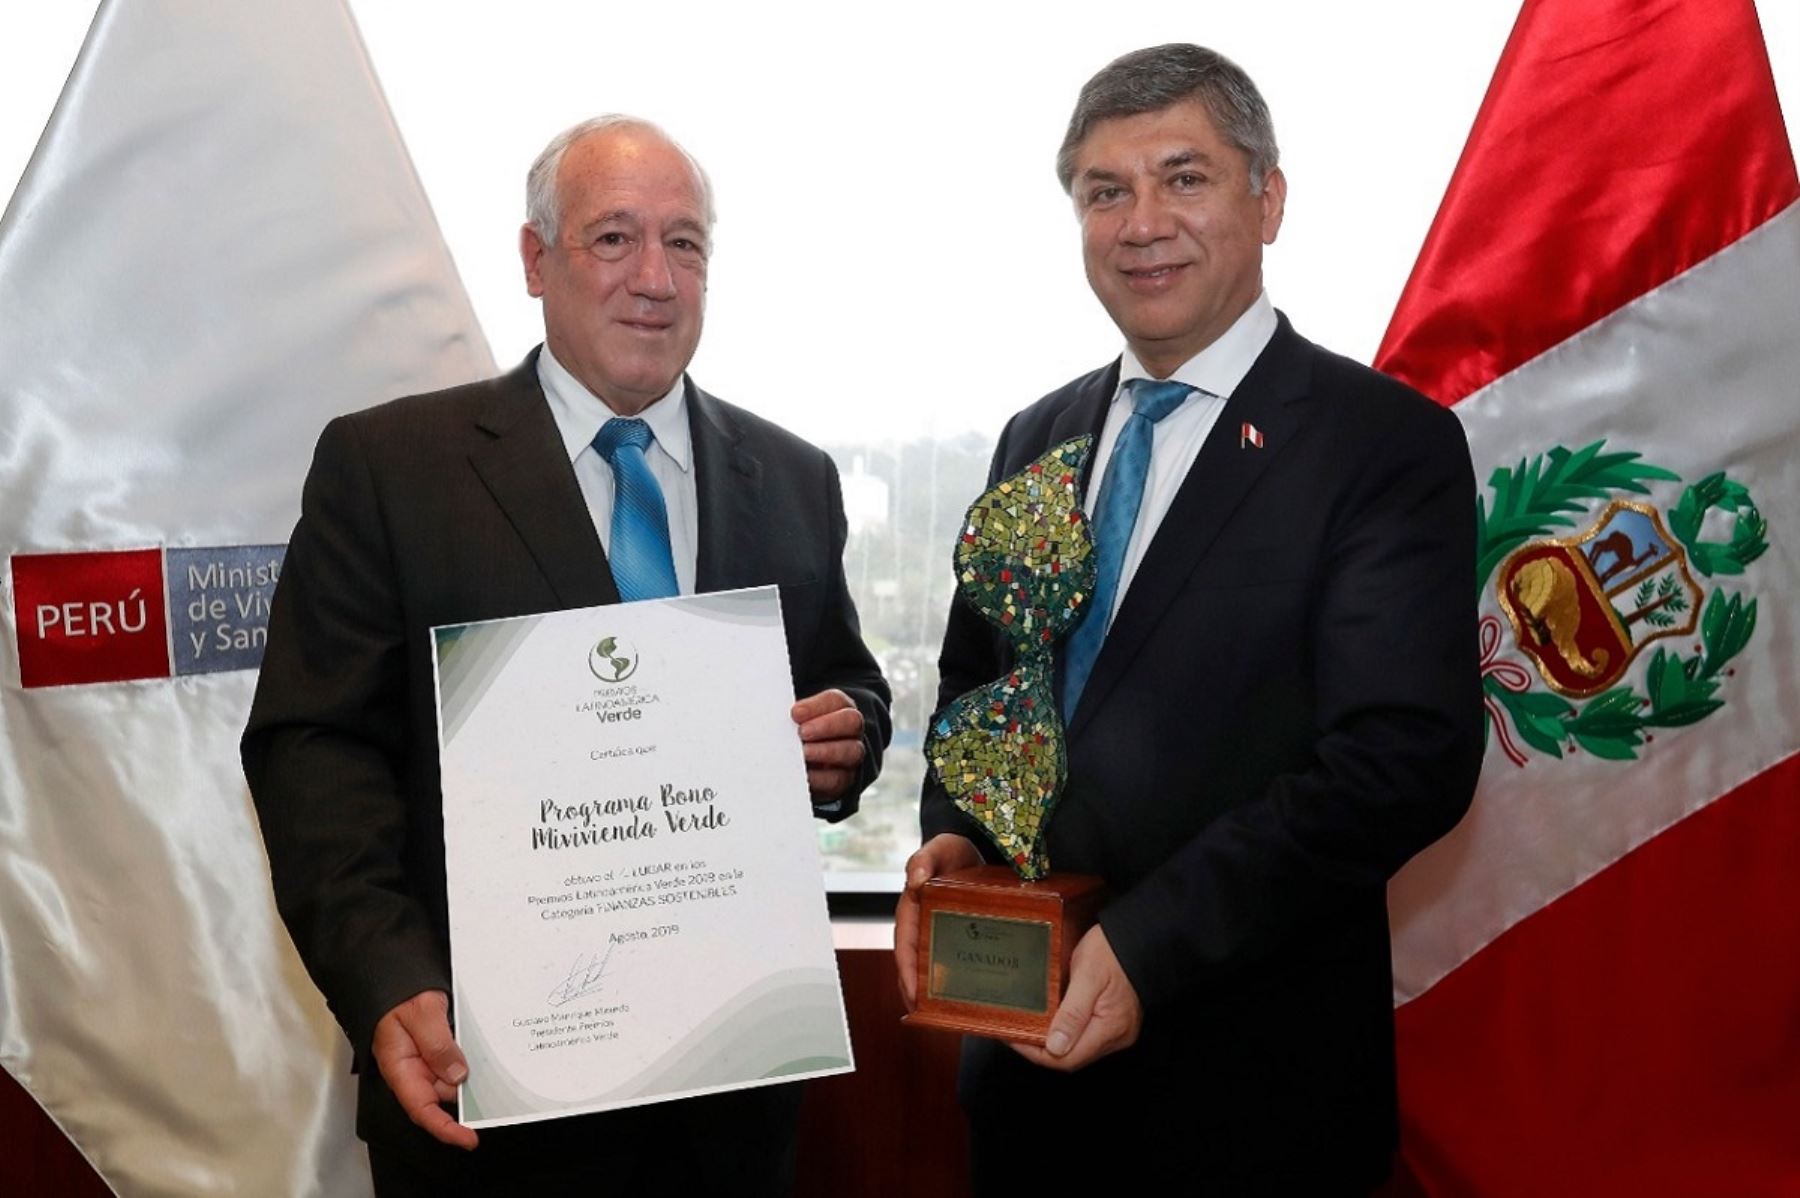 Ministro de Vivienda, Construcción y Saneamiento, Miguel Estrada presenta el premio otorgado al Bono Mivivienda Verde. Foto: Cortesía.